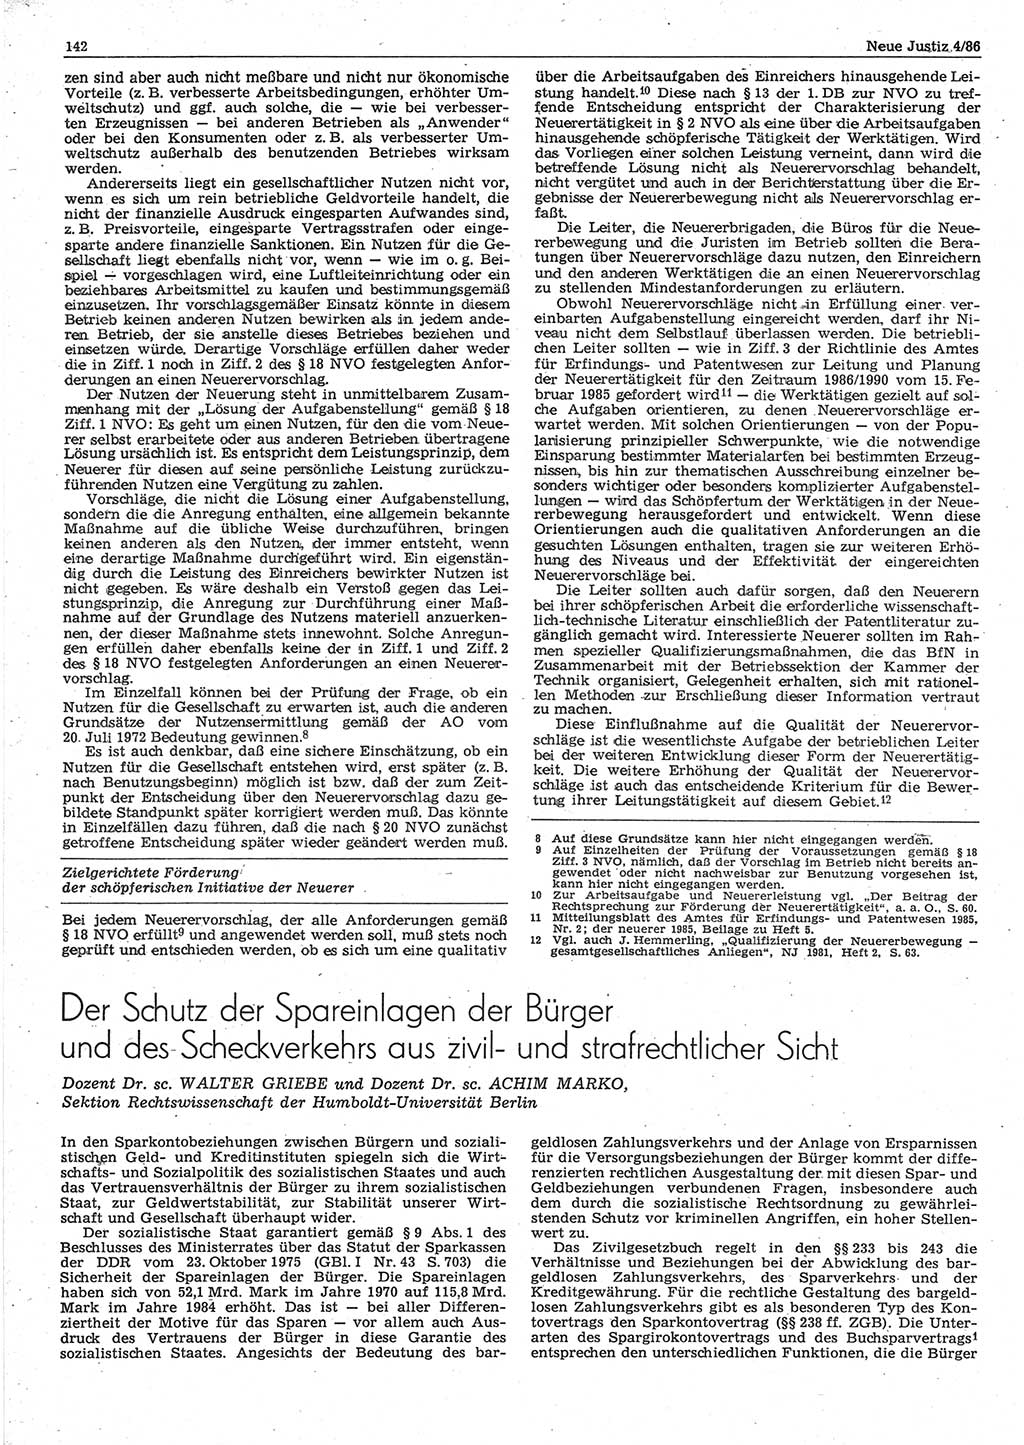 Neue Justiz (NJ), Zeitschrift für sozialistisches Recht und Gesetzlichkeit [Deutsche Demokratische Republik (DDR)], 40. Jahrgang 1986, Seite 142 (NJ DDR 1986, S. 142)